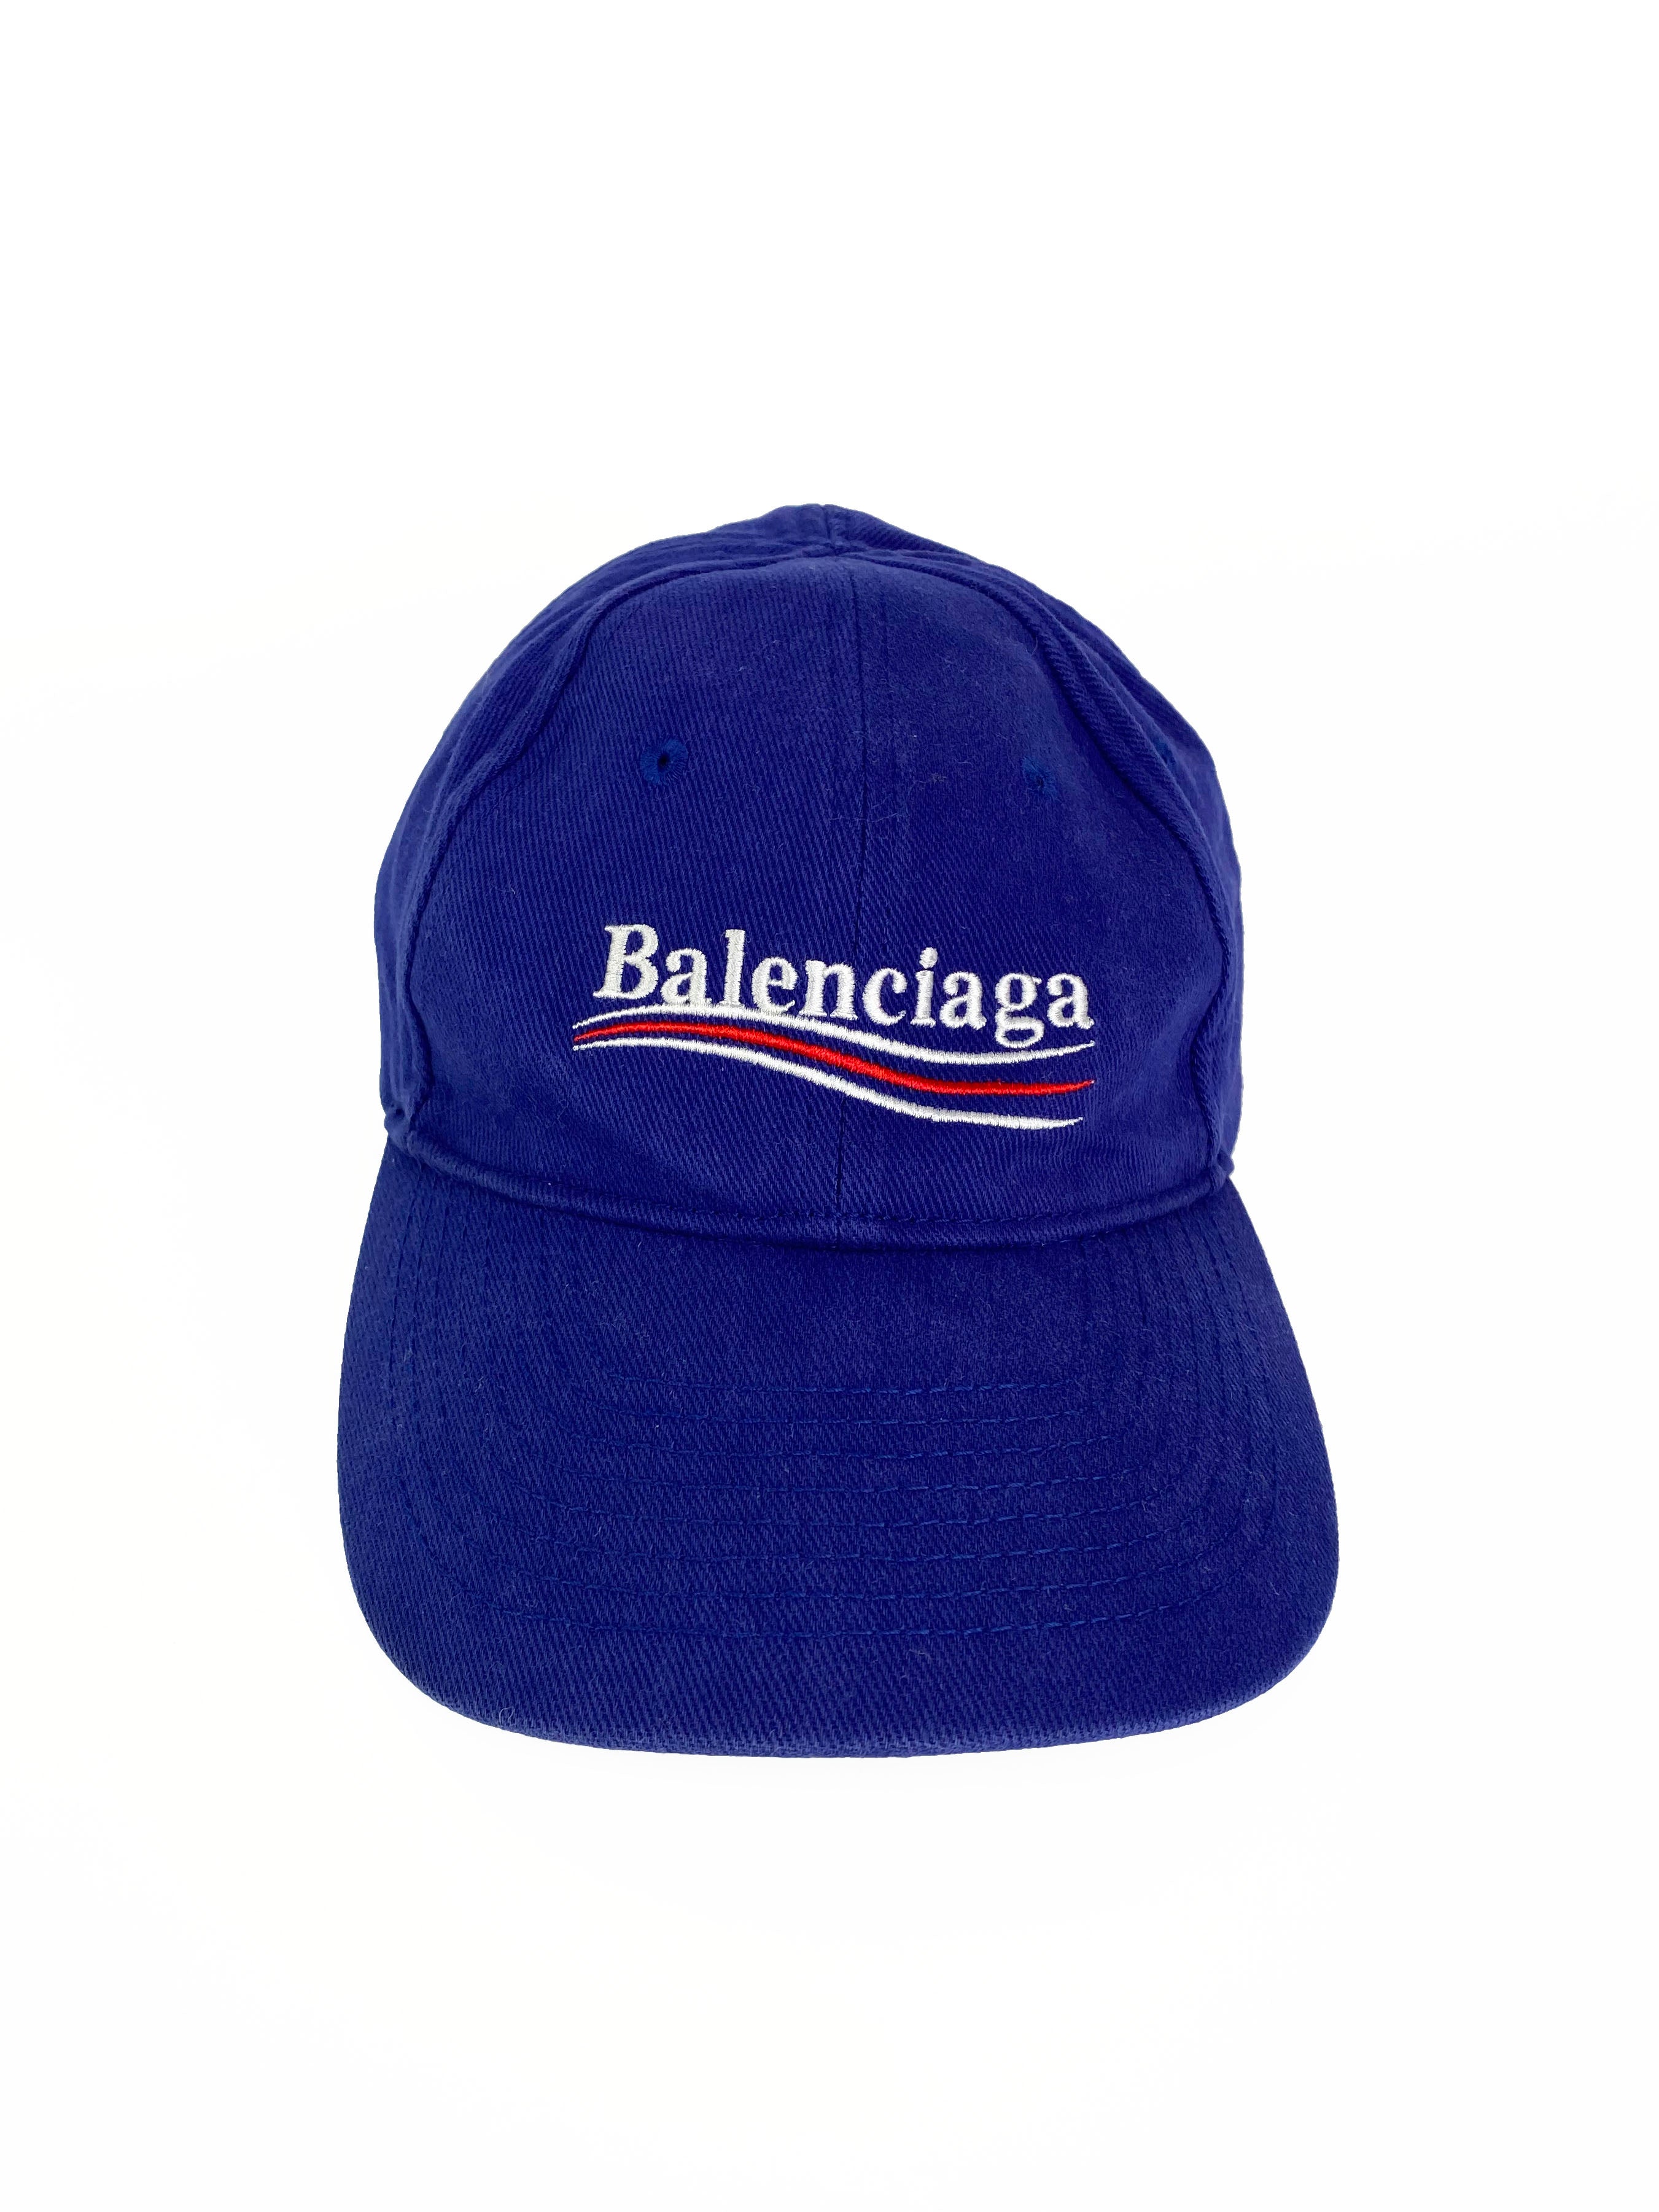 Balenciaga Political Campaign Cap L